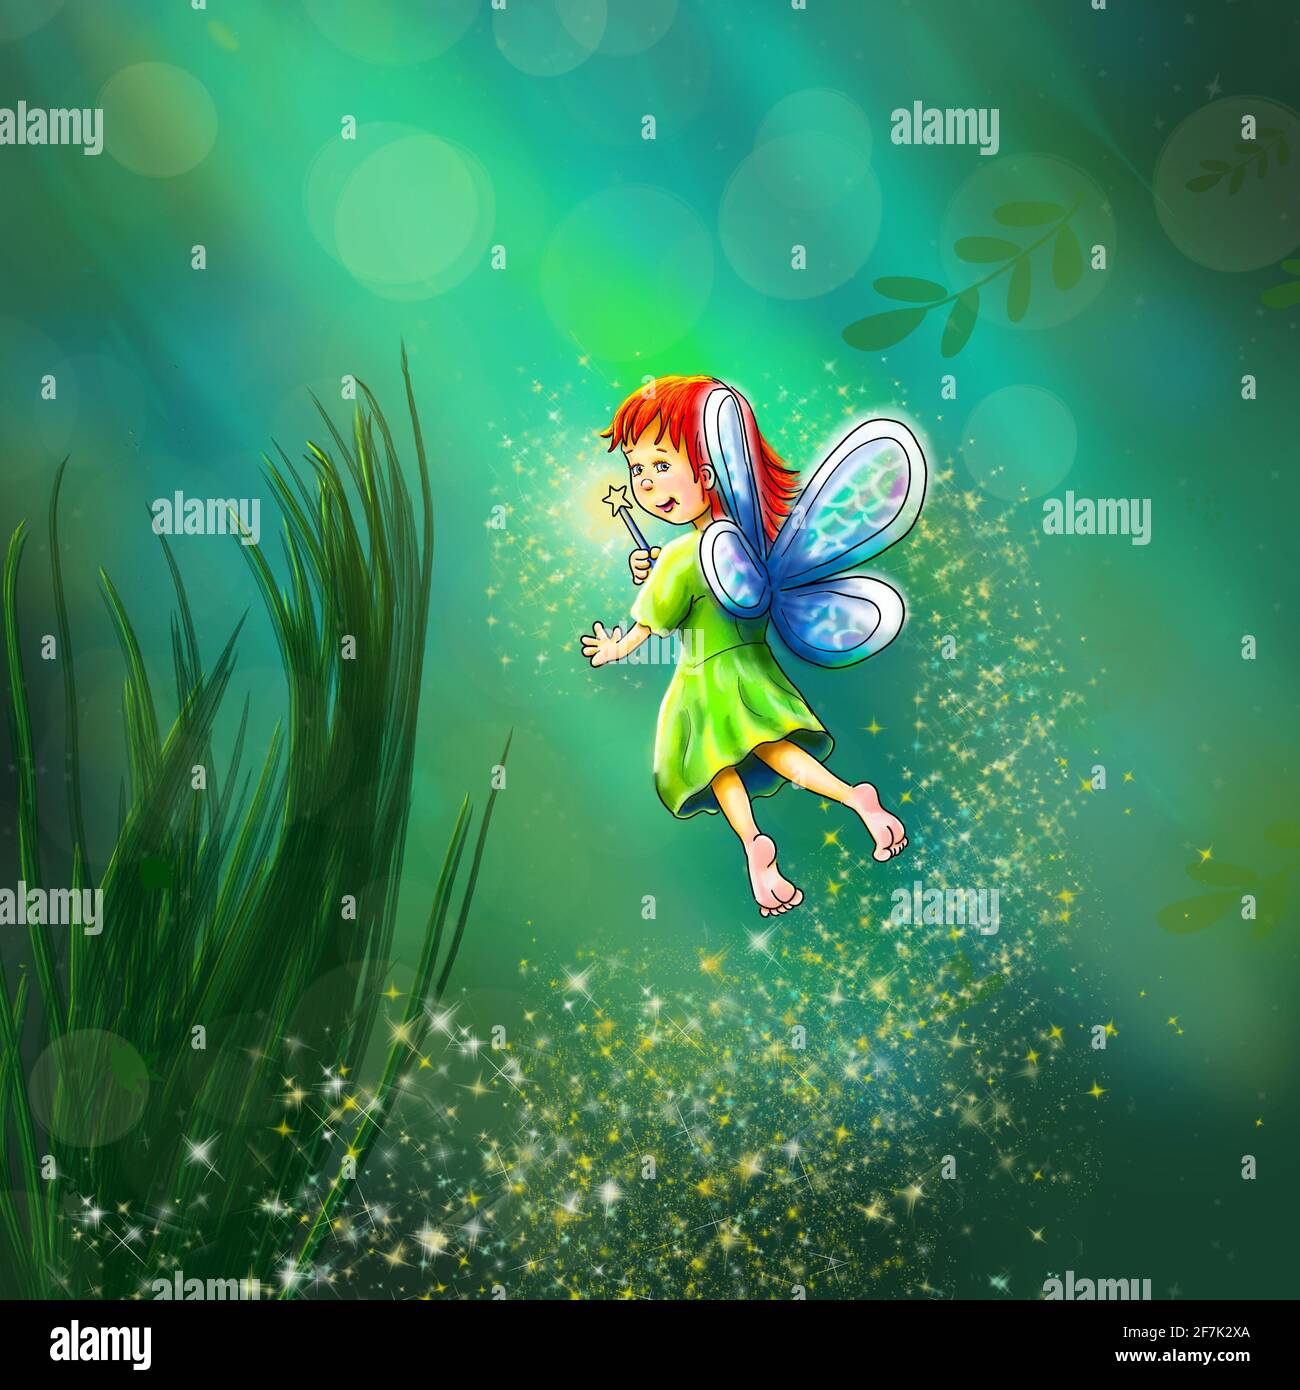 Elfi, el libro infantil pequeño elfo ilustración elfos hadas gnomos naturaleza seres verde bosque amigable encantadora ayudante alas de apoyo Foto de stock